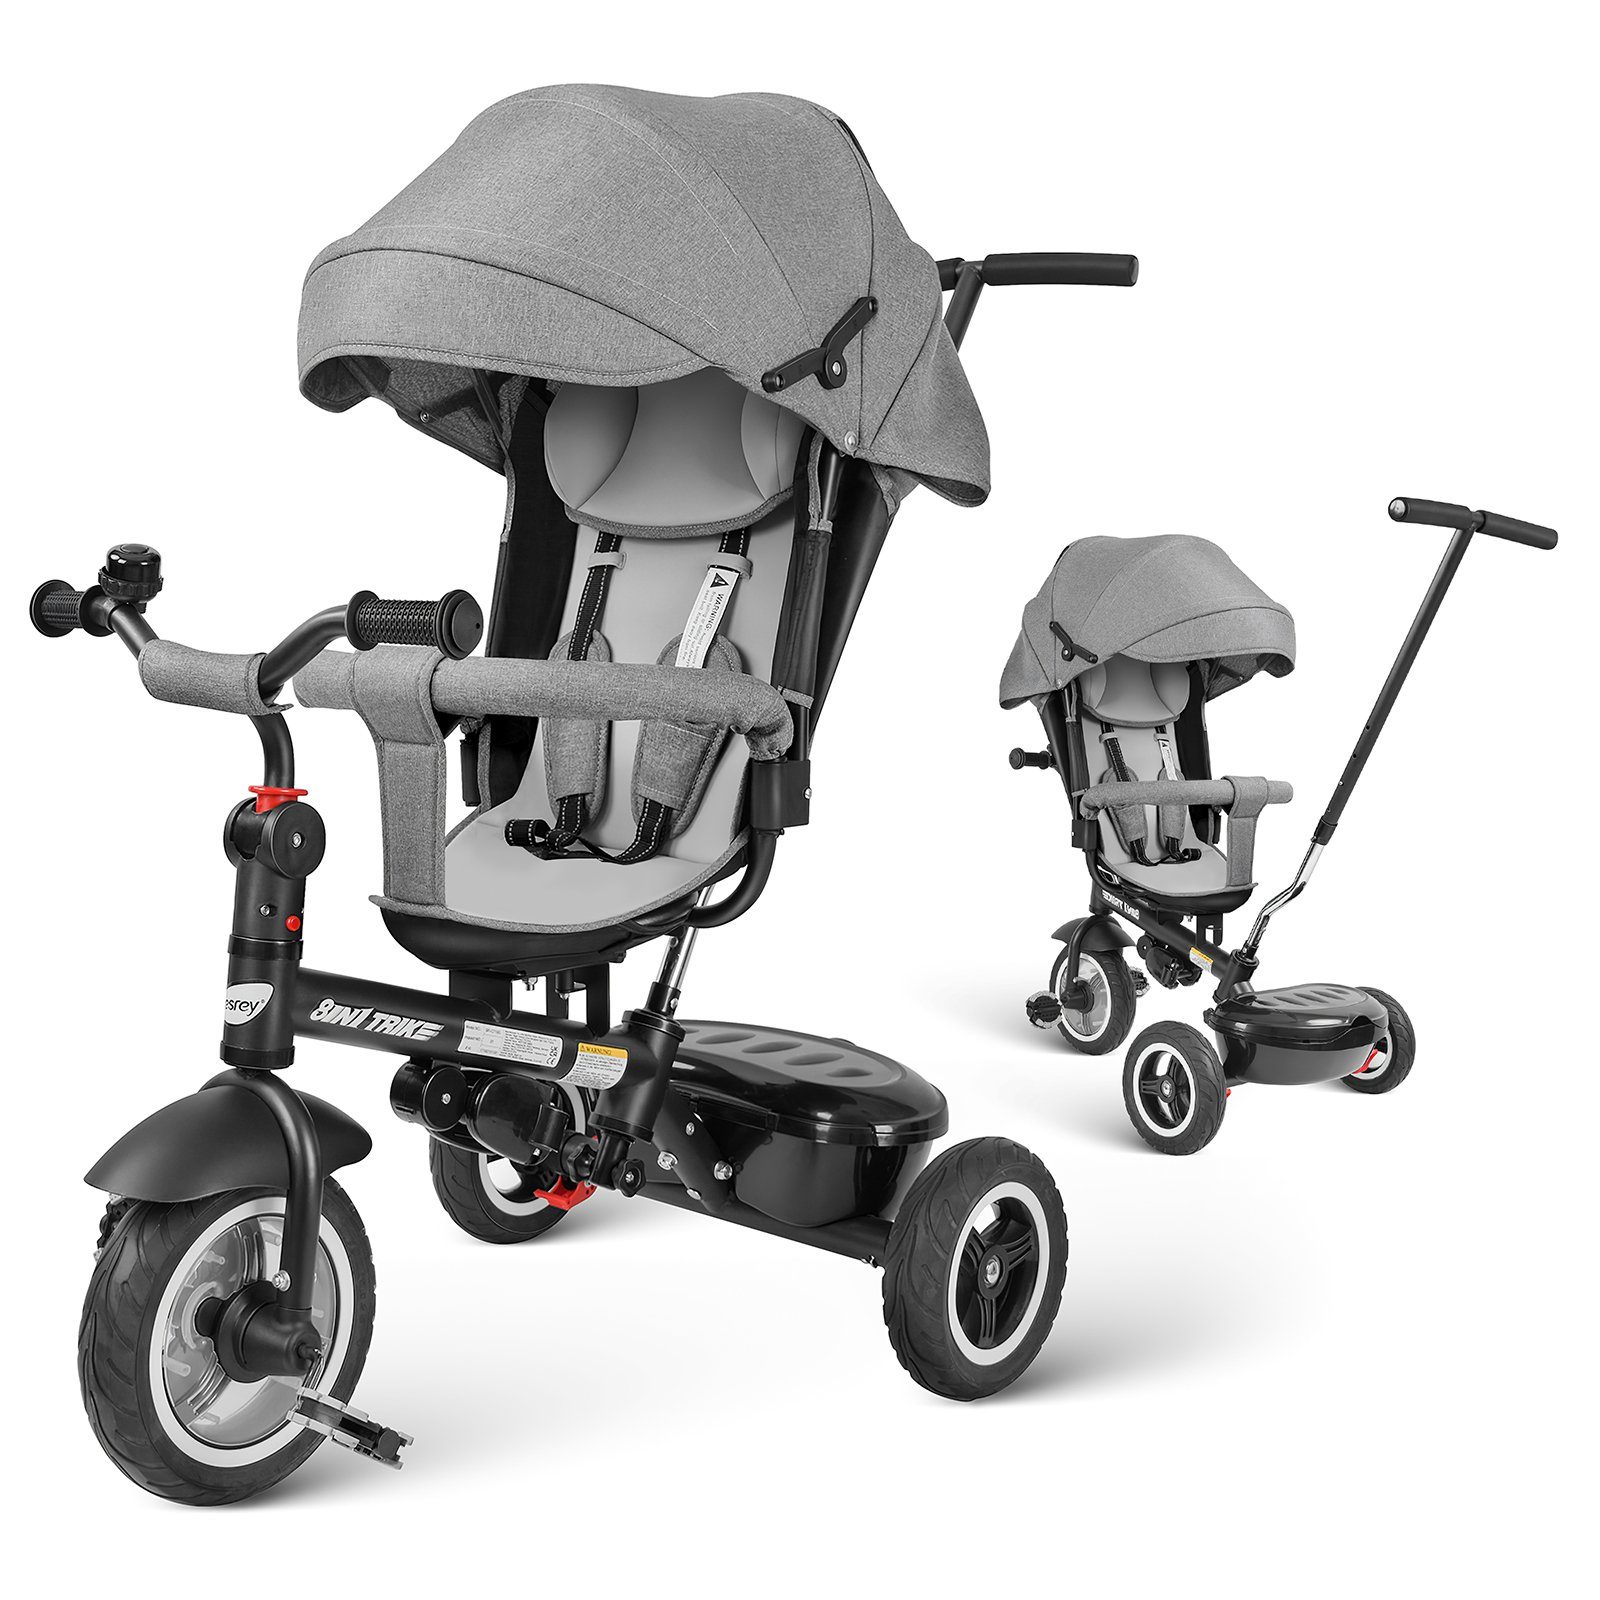 PLEKER Dreirad-Kinderwagen 7-in-1 Kinder Dreirad 360° drehbar Sitz und verstellbarer Rücklehne, All-Terrain-Räder aus Gummi, Freilauffunktion